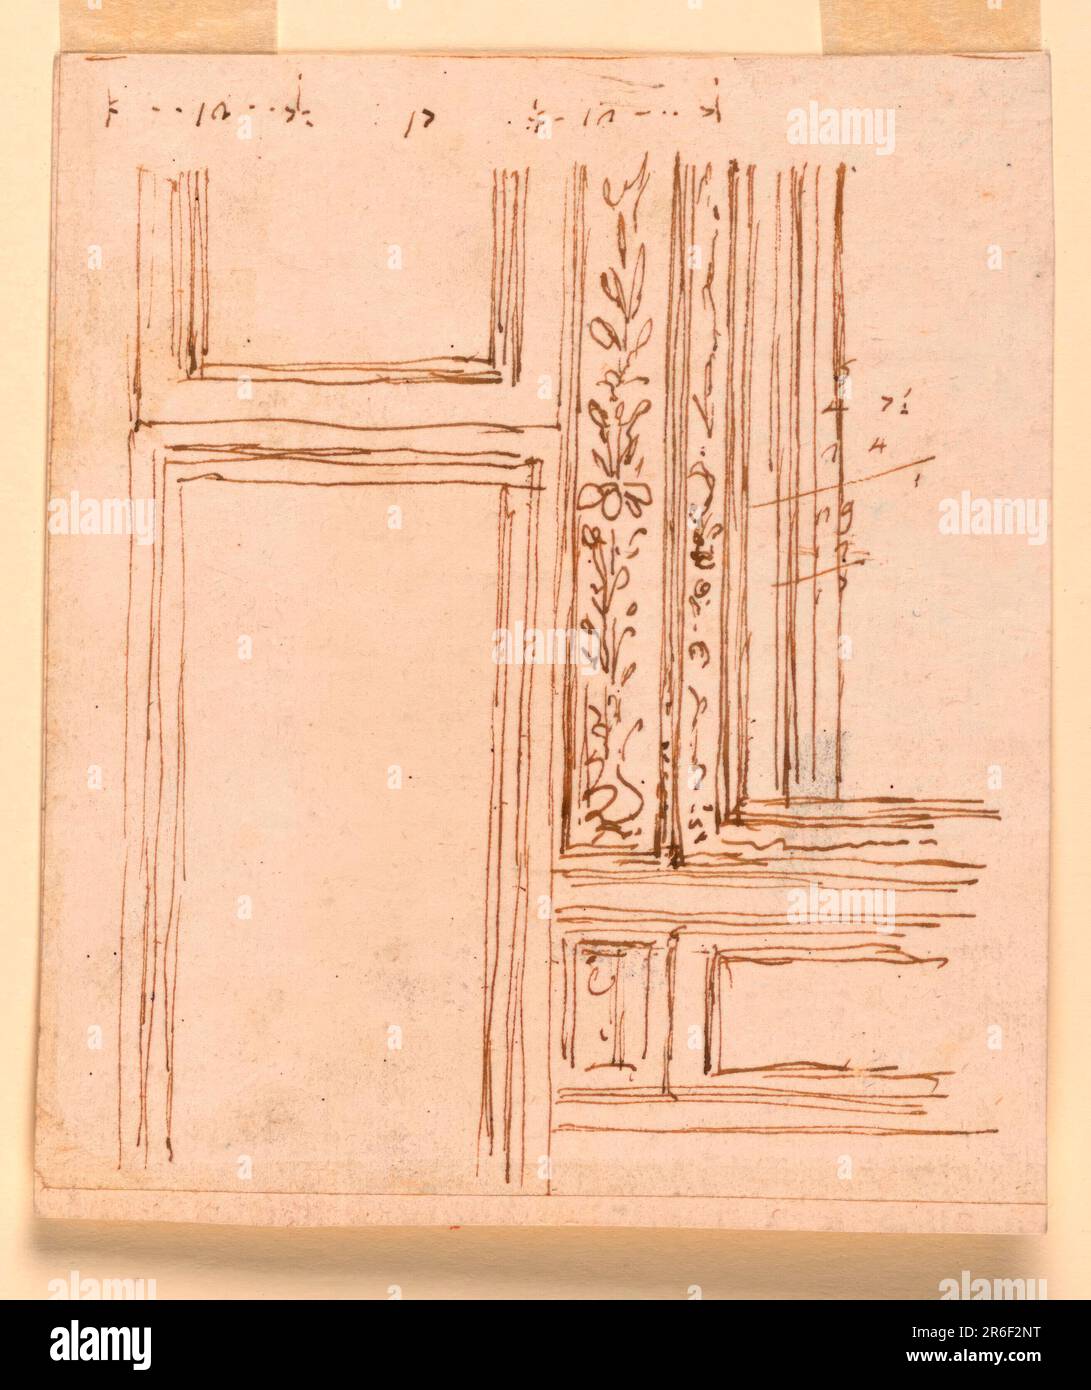 Höhe Der Türwand. Stift und braune Tinte auf weißem, gefärbtem Papier. Datum: 1746-1809. Museum: Cooper Hewitt, Smithsonian Design Museum. Stockfoto